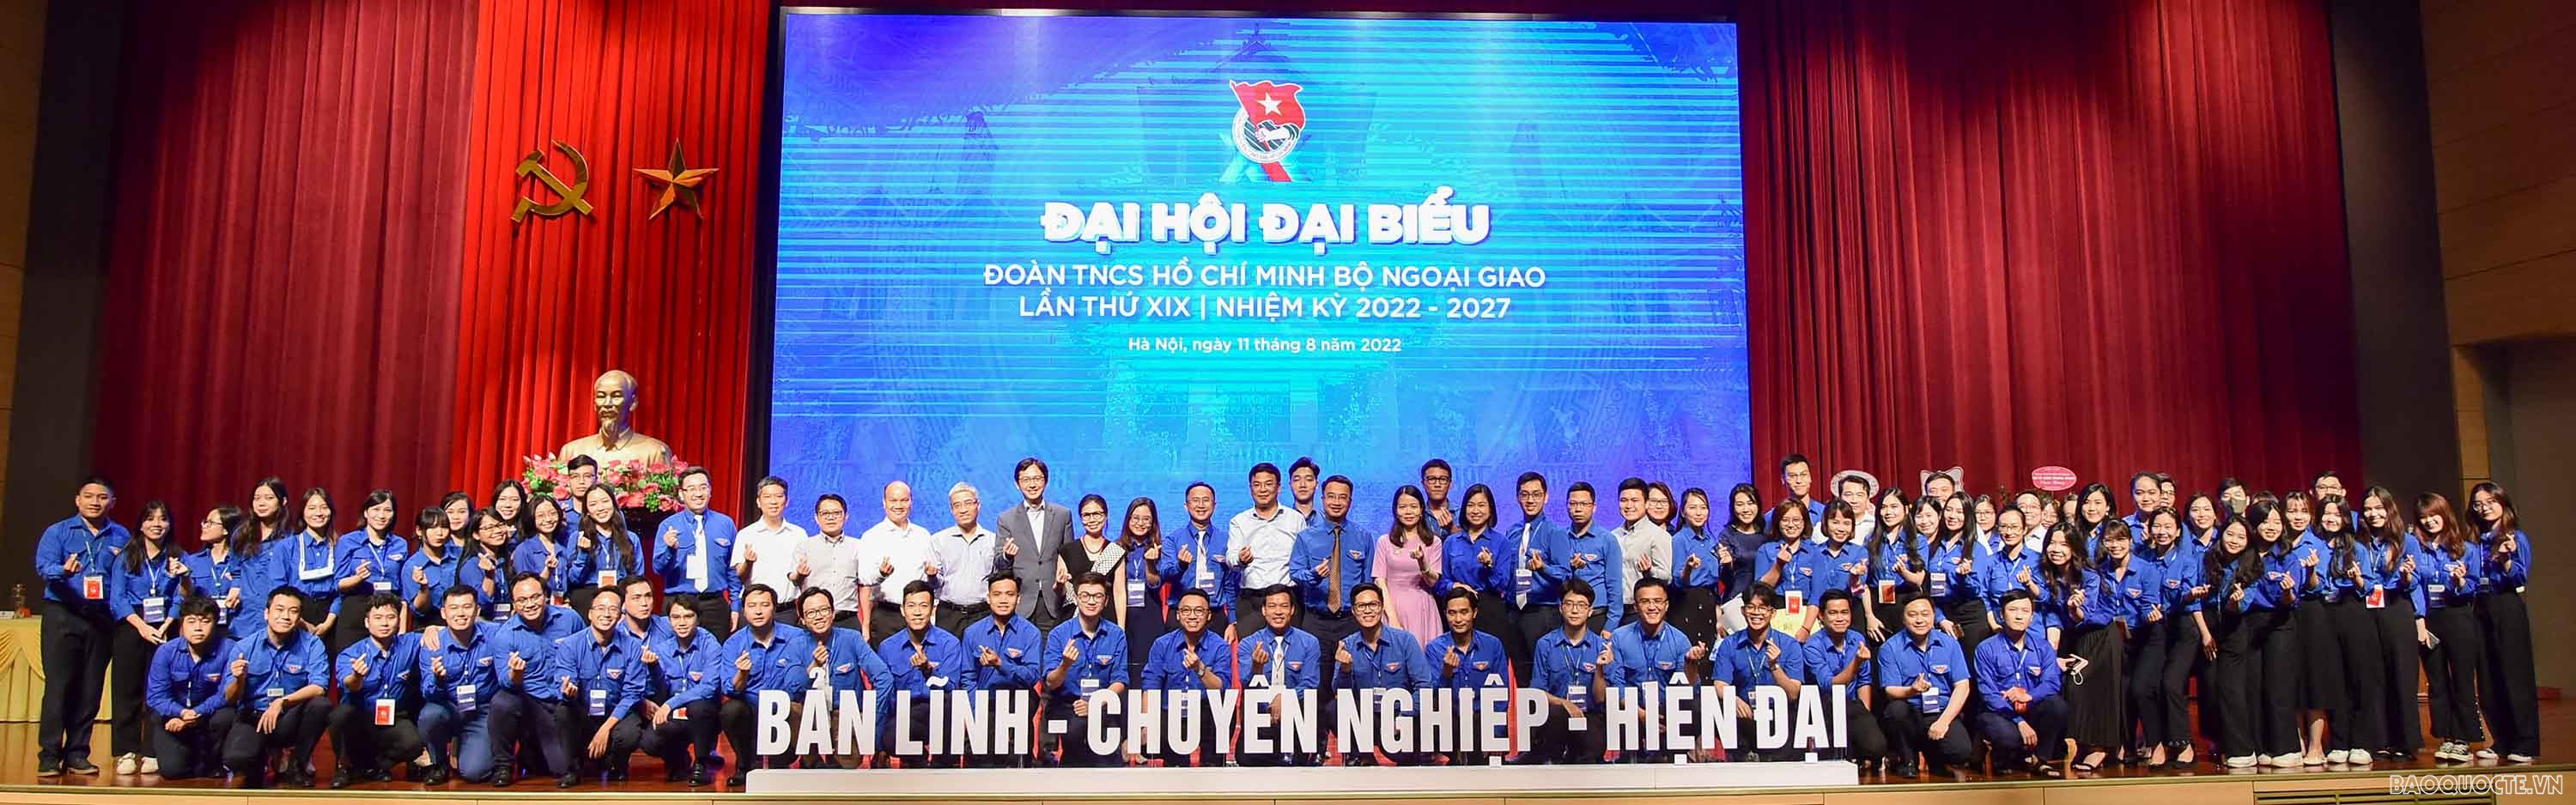 Thứ trưởng Ngoại giao Phạm Quang Hiệu và các đại biểu chụp ảnh lưu niệm cùng các đoàn viên thanh niên tại đại hội.